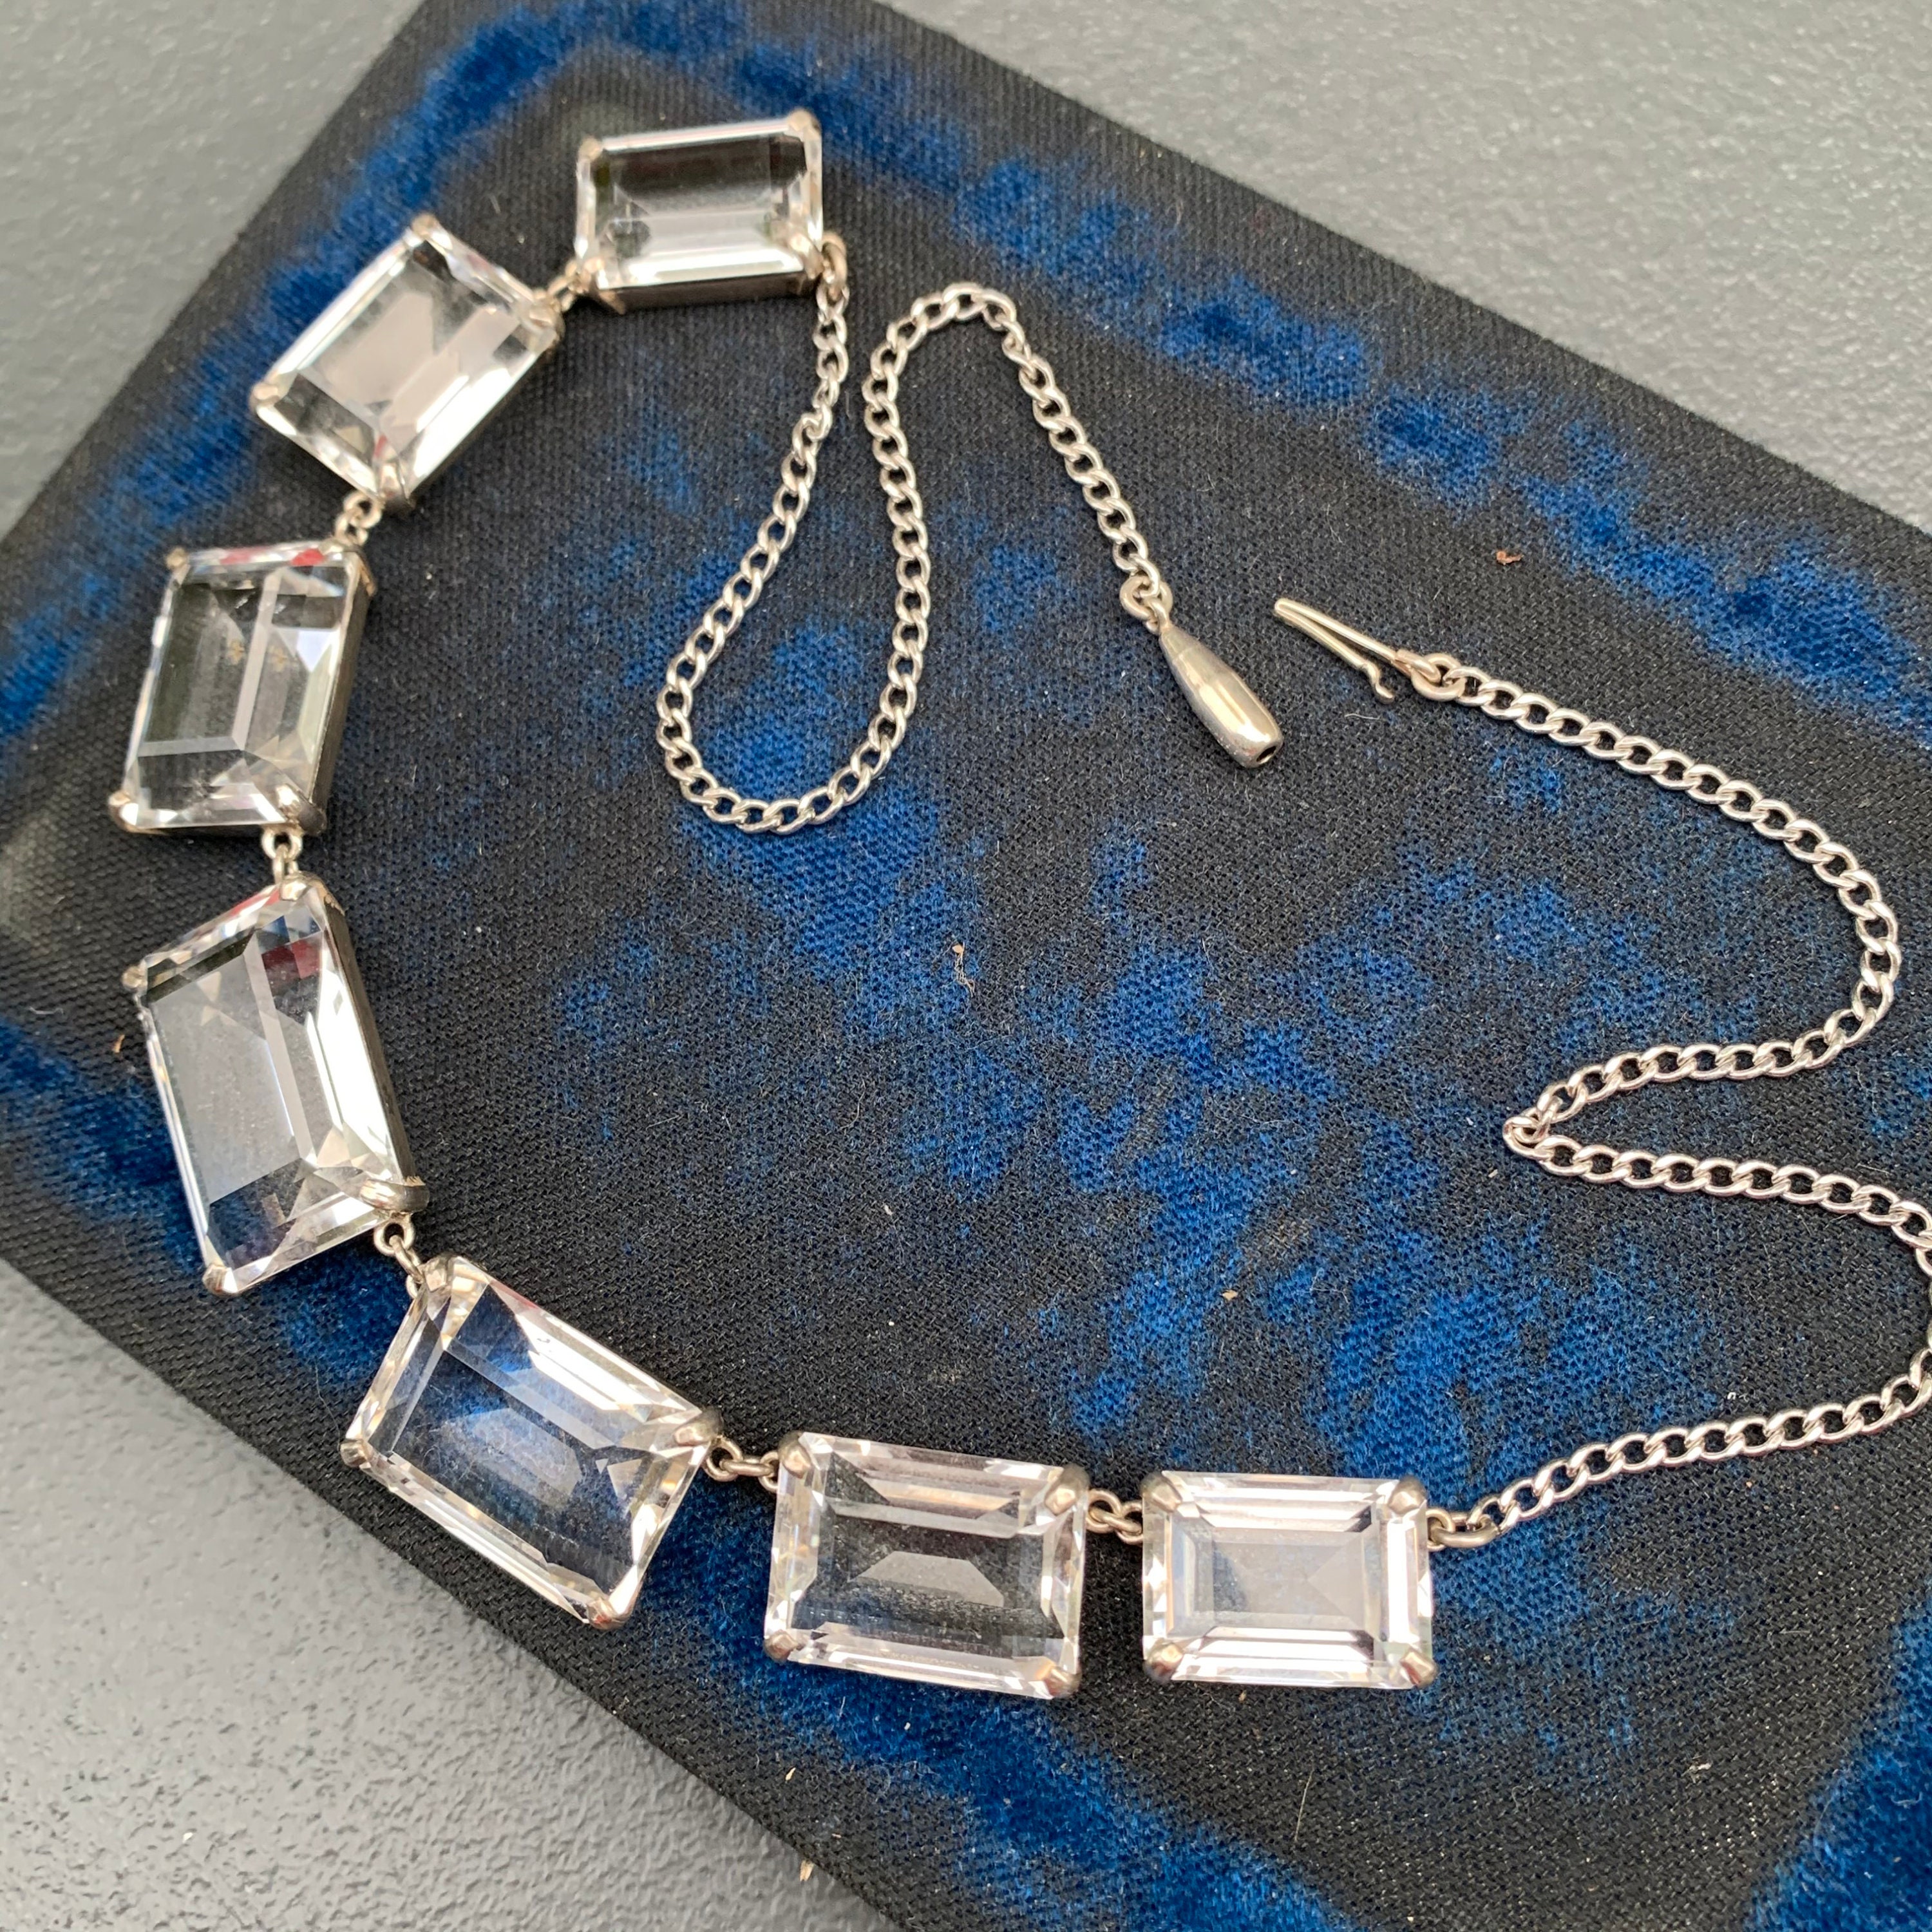 Japanese Necklace Cloisonne Oval Pendant Vtg Metal Glass Blue Silver J |  Online Shop | Authentic Japan Antiques